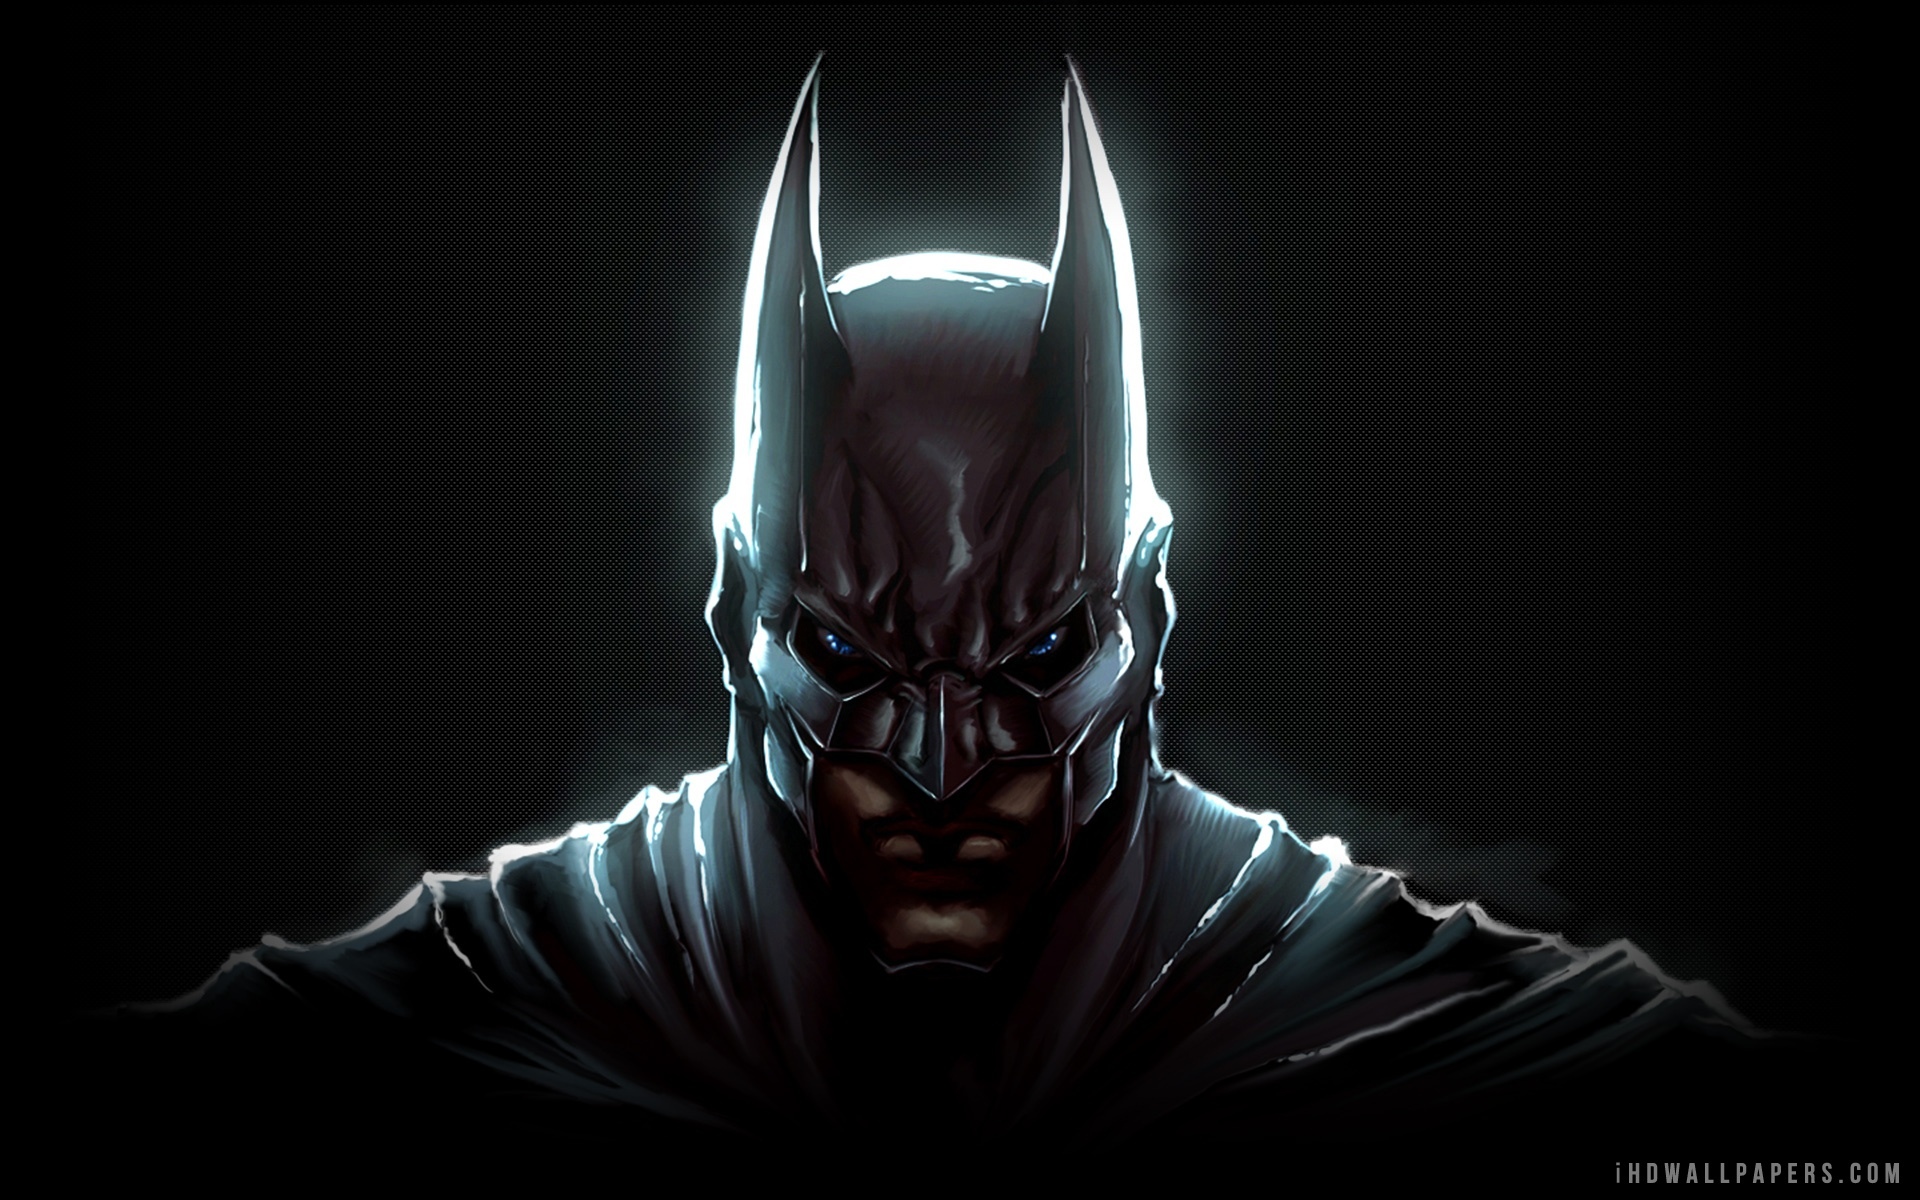 黑暗骑士蝙蝠侠创建壁纸,高清图片,壁纸,创意设计